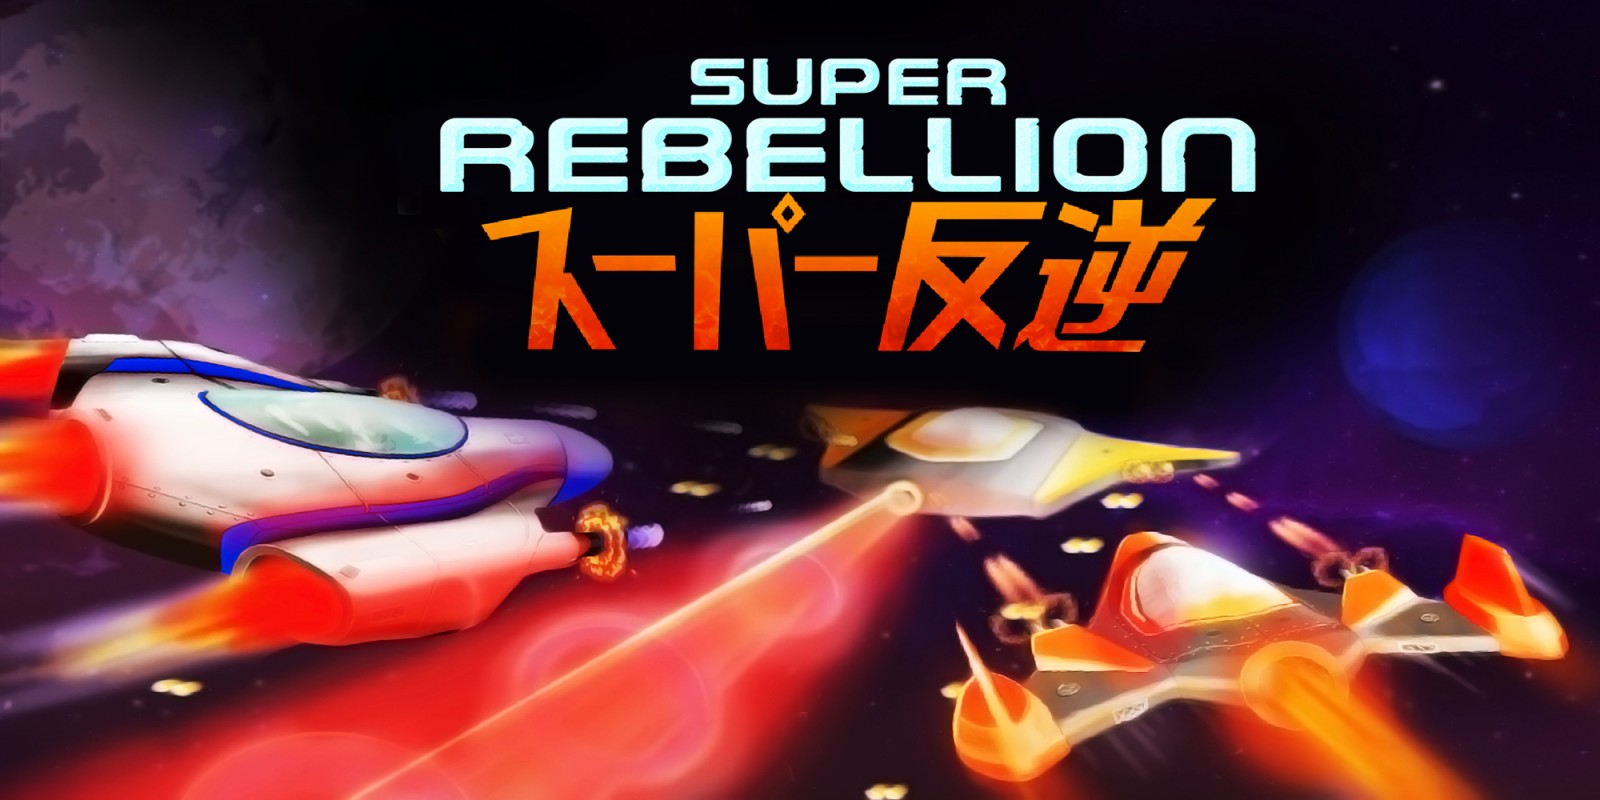 Super Rebellion